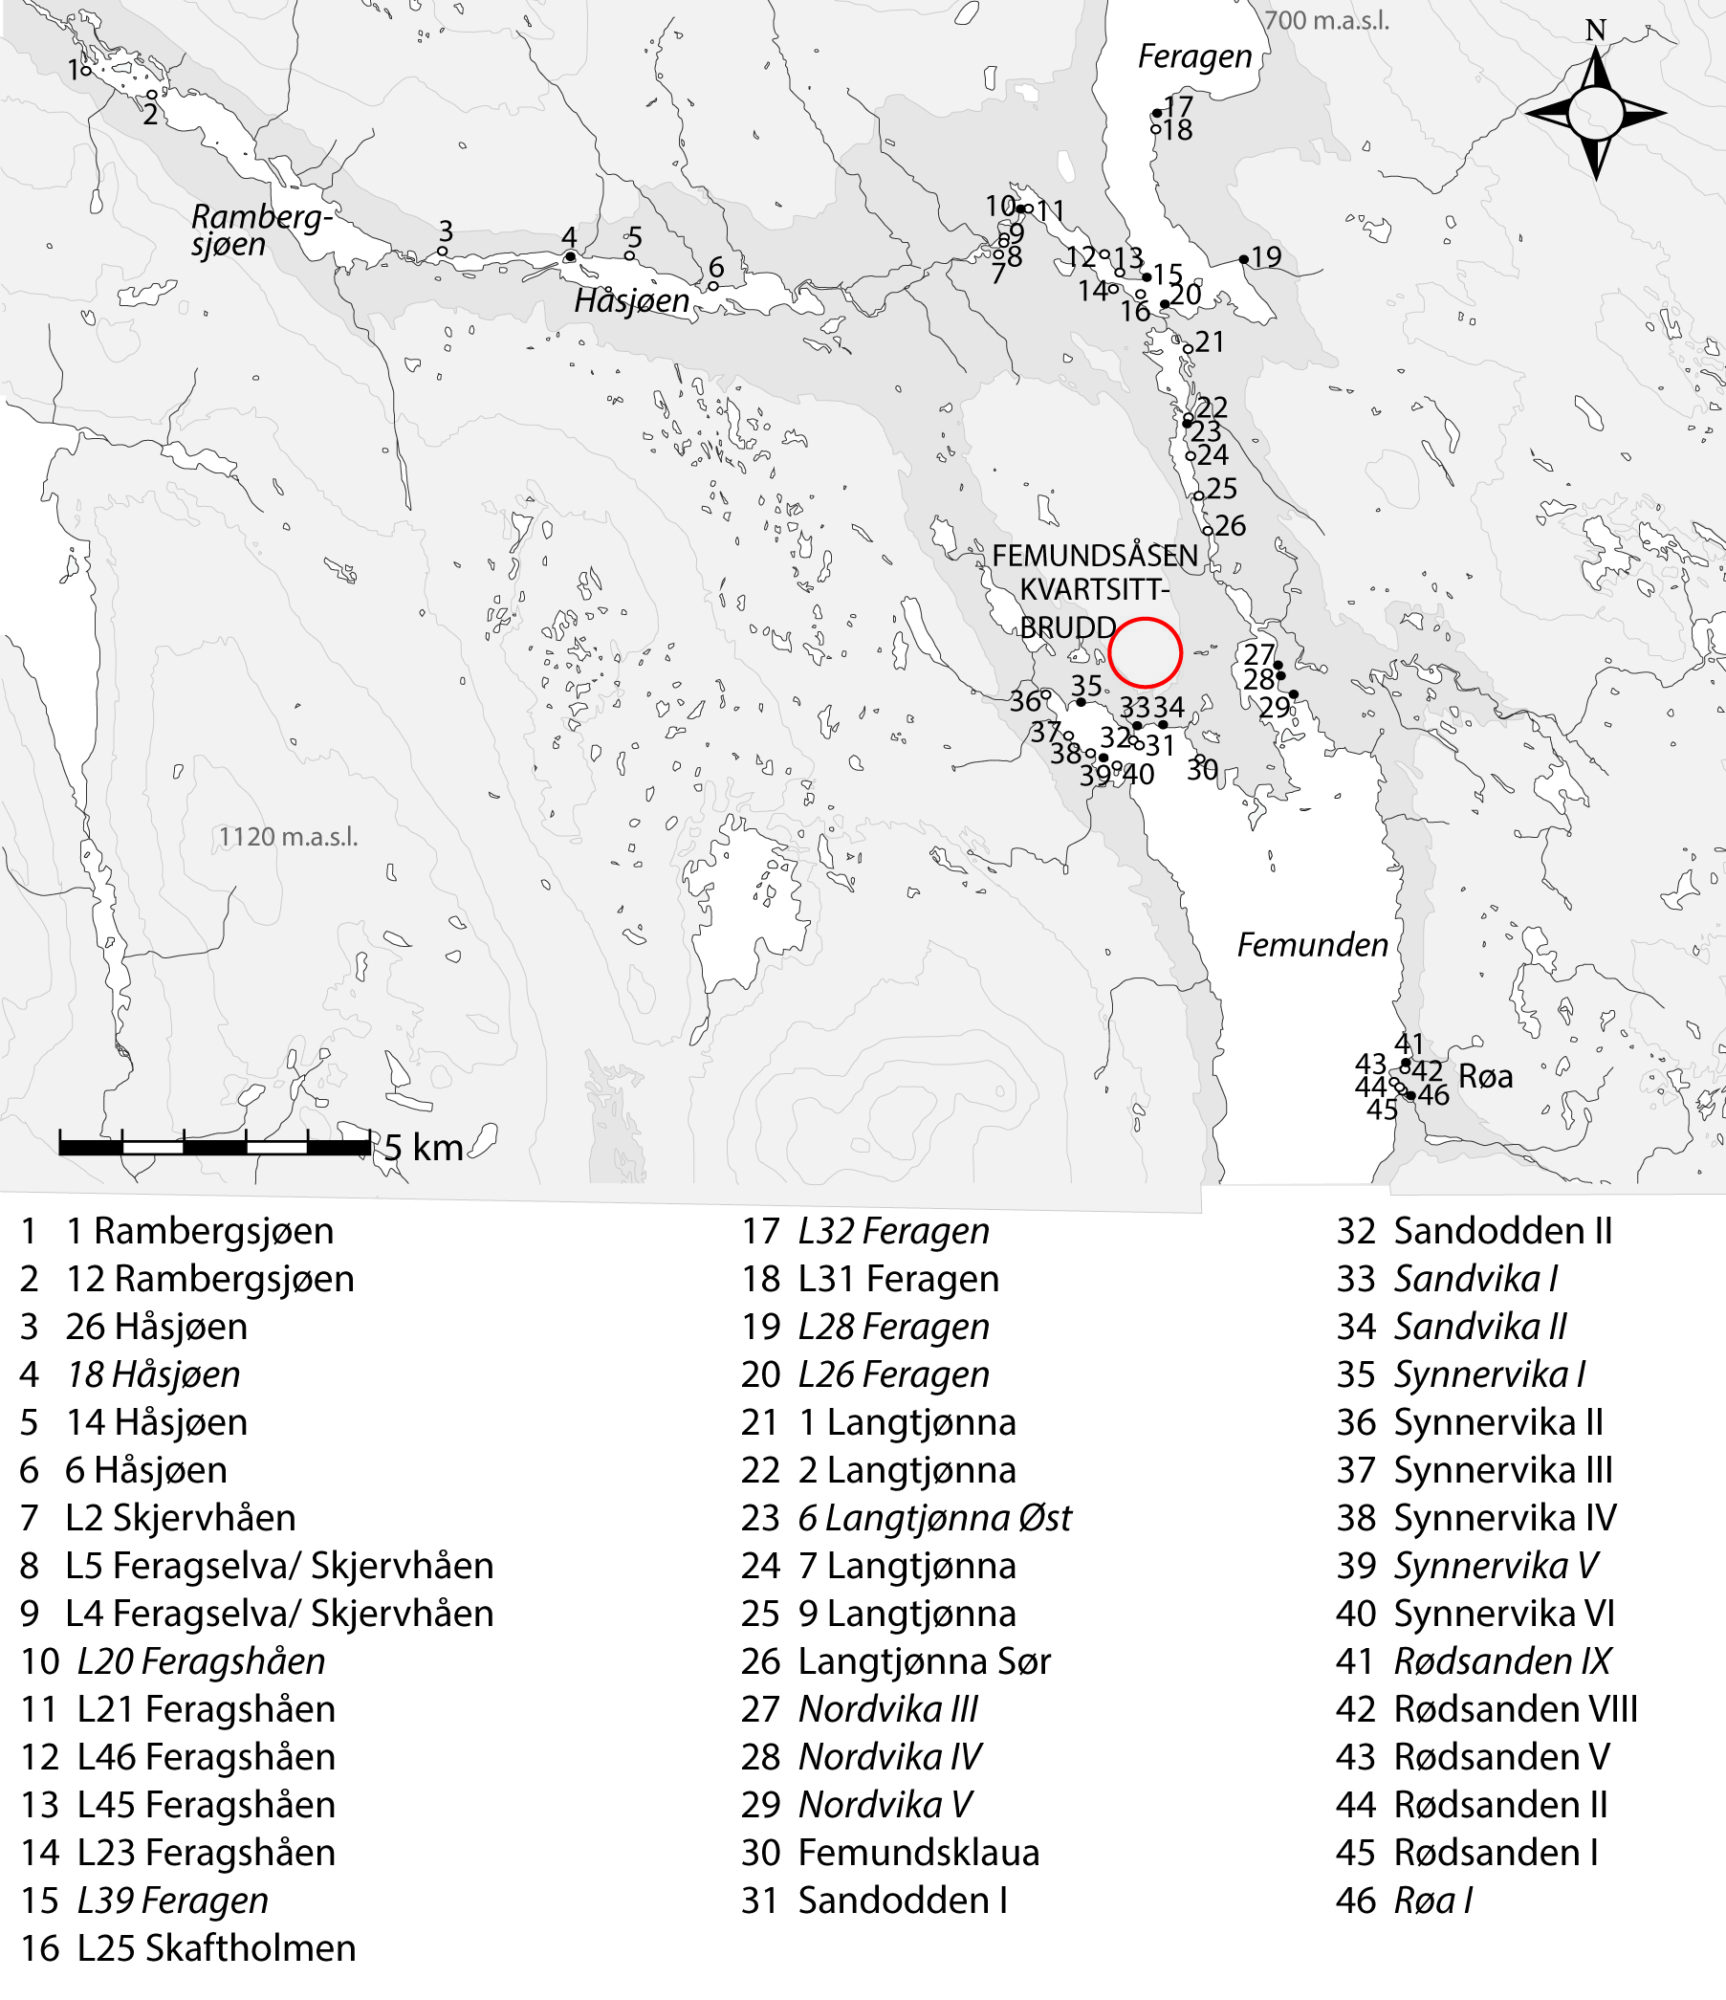 Kart og liste over registrerte lokaliteter rundt Femunden og nærliggende vann og vassdrag der det er funn av kvartsitt lik den fra Femundsåsen kvartsittbrudd. Sorte sirkler markerer funn av flatehuggede spisser eller emner til slike. Illustrasjon: Astrid J. Nyland, Arkeologisk museum, Universitetet i Stavanger 